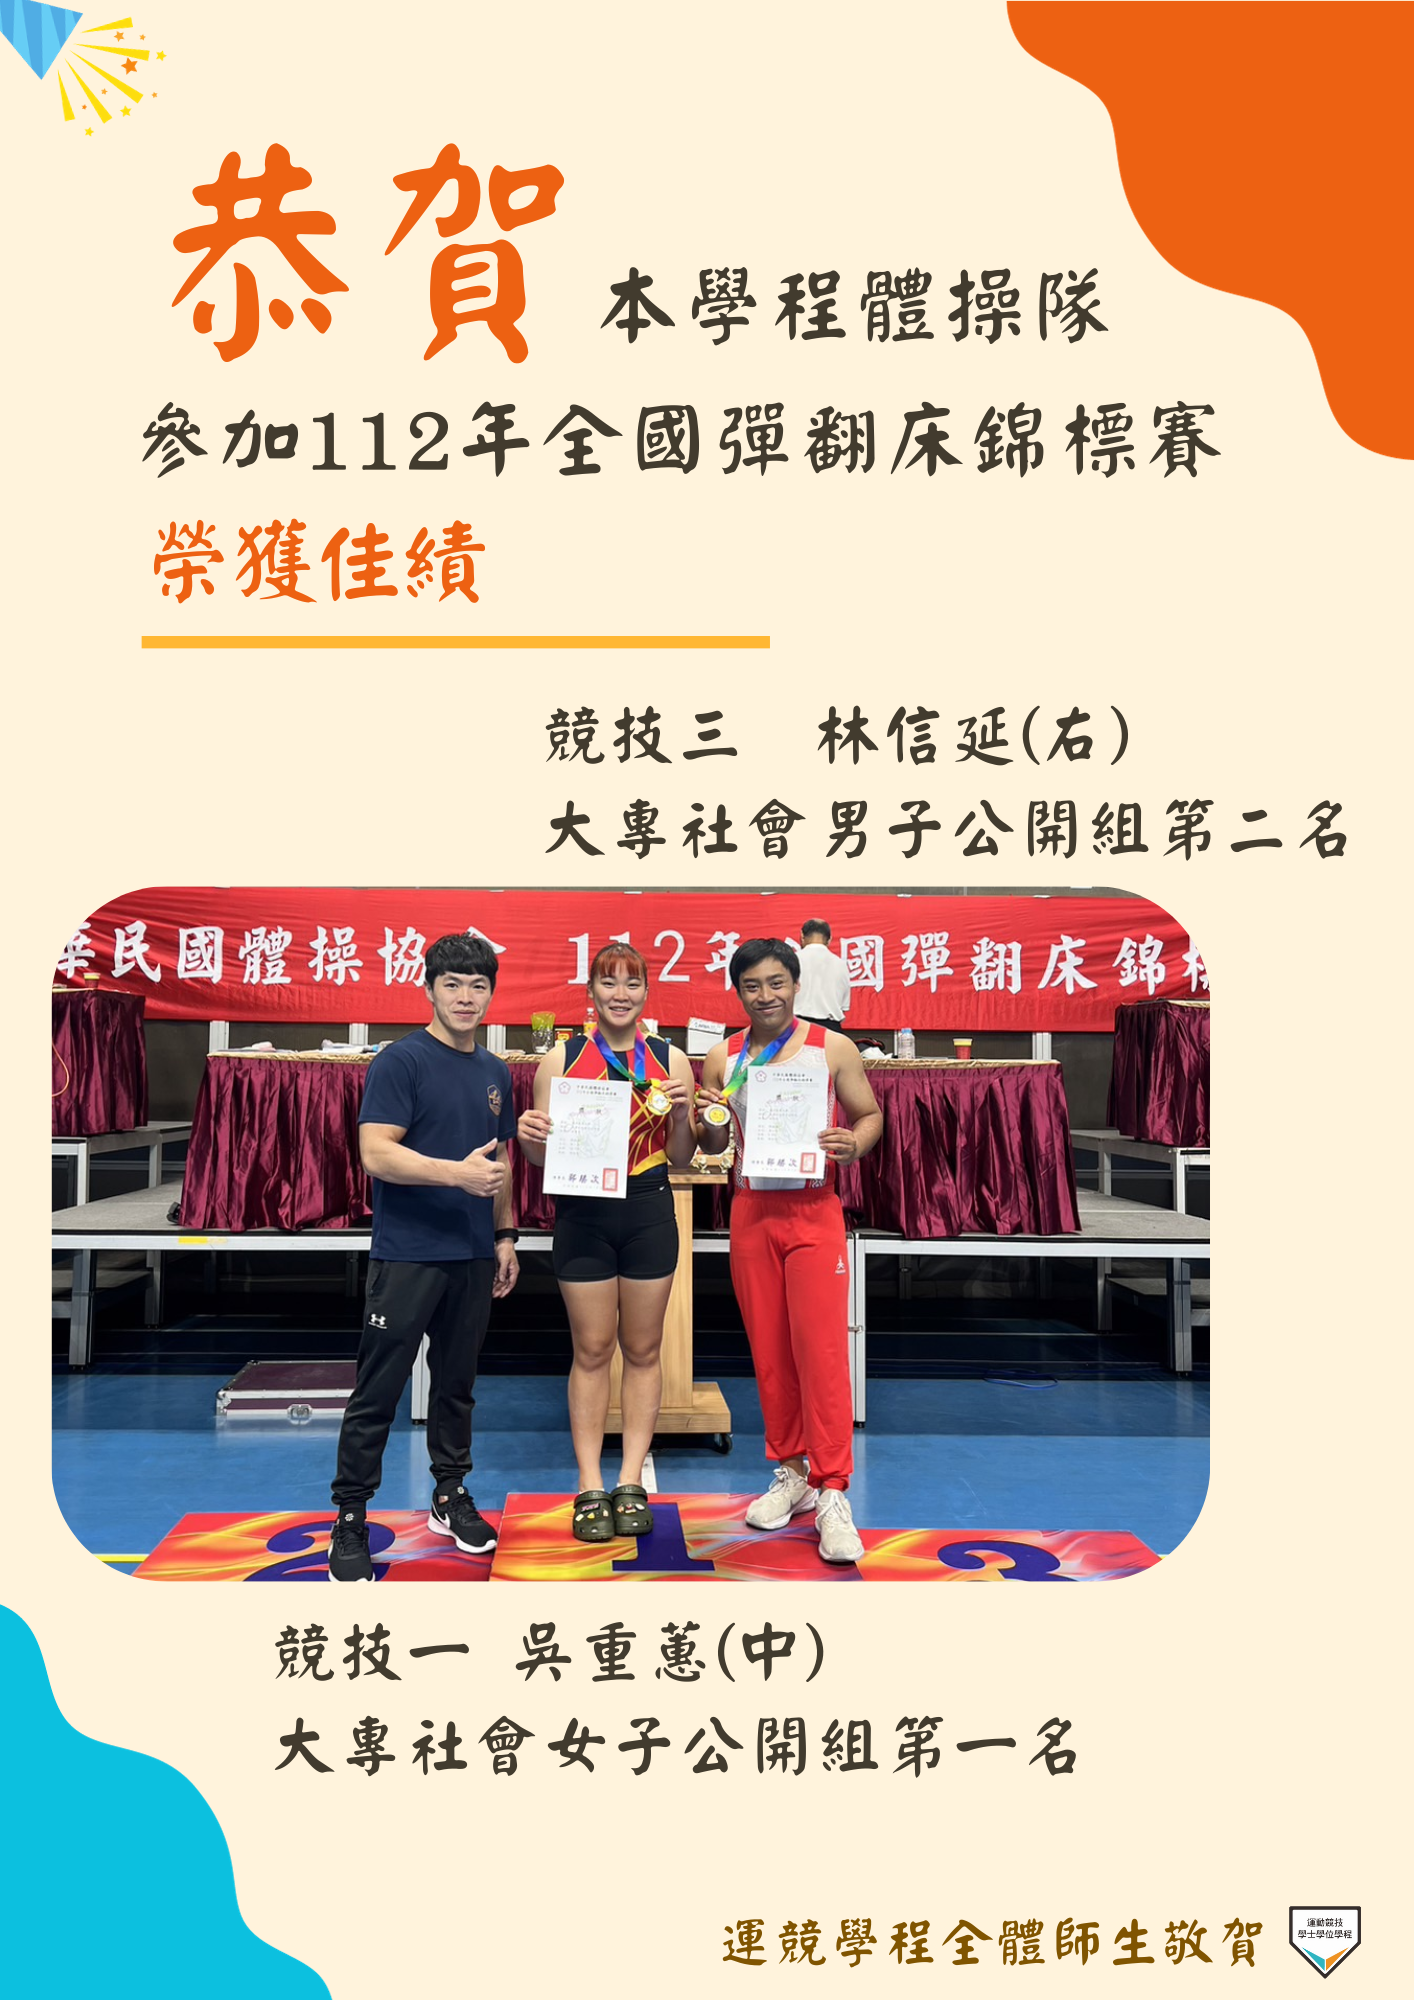 【榮譽榜】恭賀本學程體操隊學生參加112年全國彈翻床錦標賽榮獲佳績!